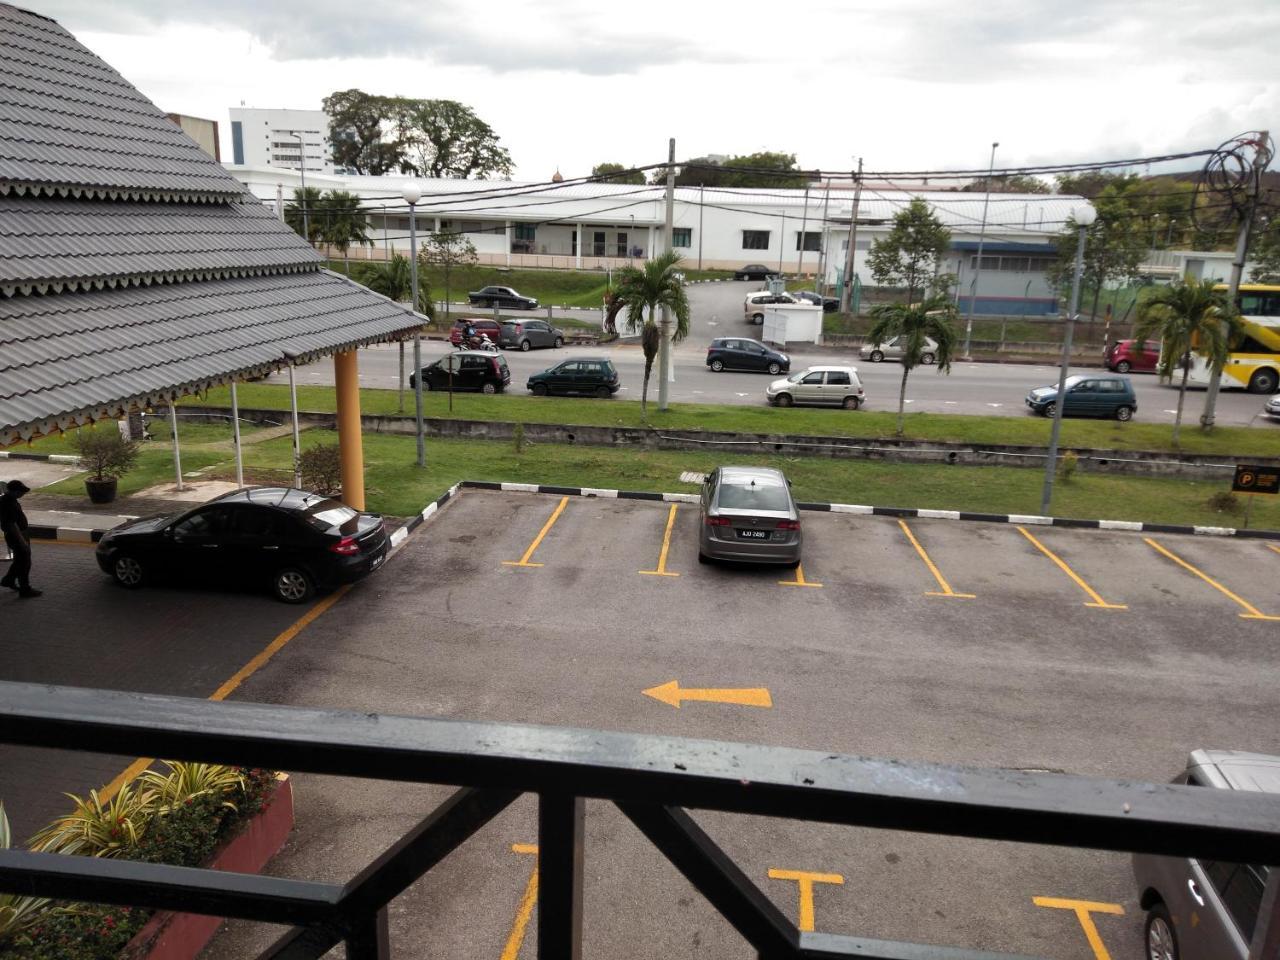 Hotel Seri Malaysia Sungai Petani Bagian luar foto